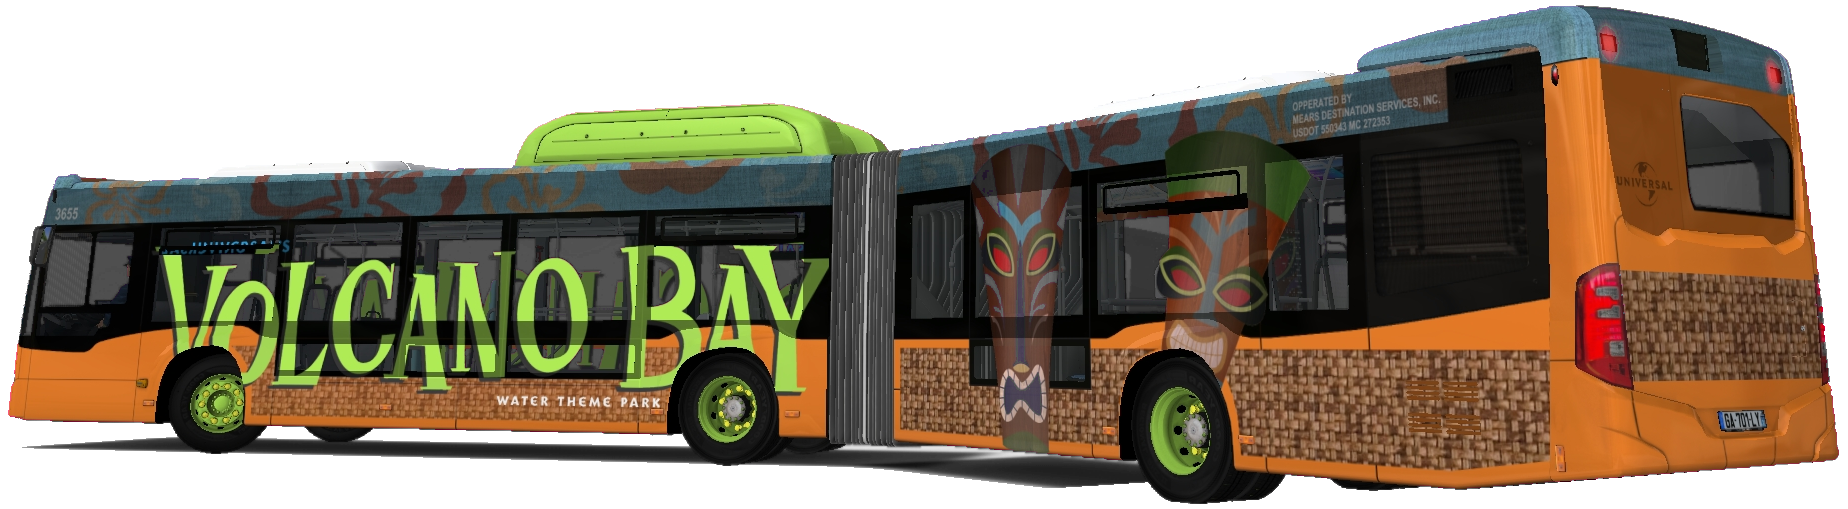 Volcano Bay Bus